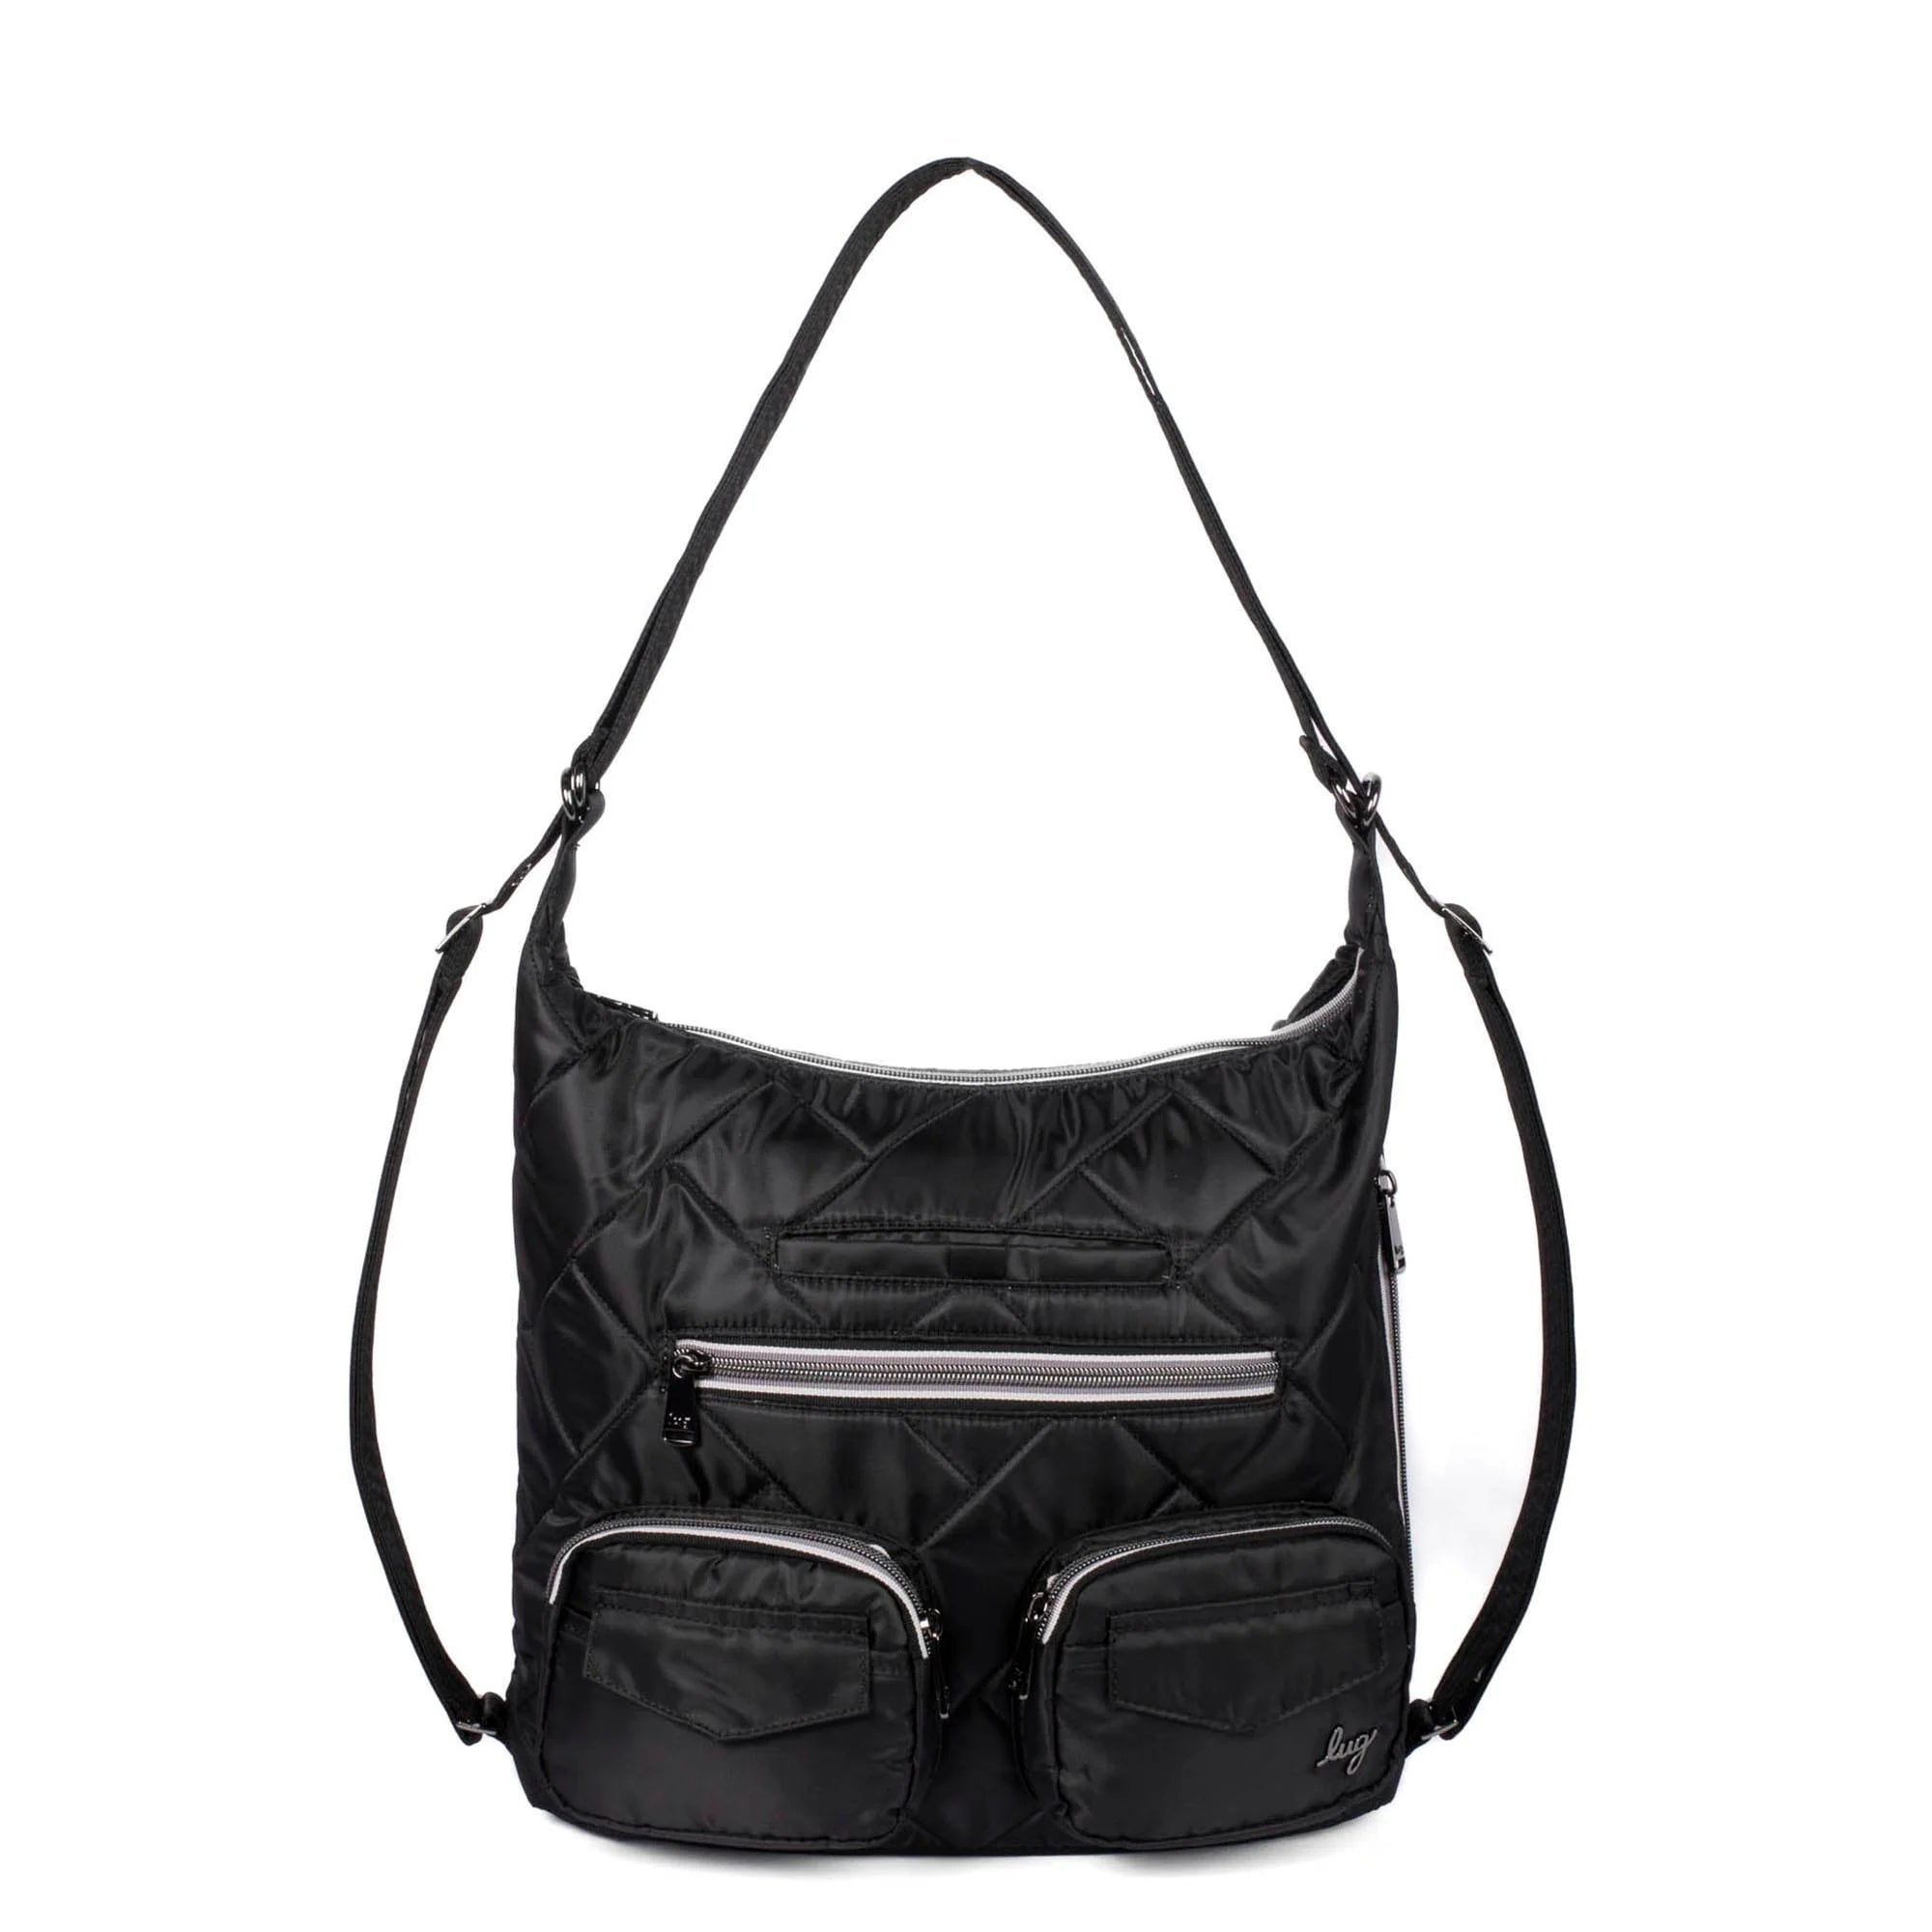 Zipliner 2 Convertible Shoulder Bag/Backpack- Black